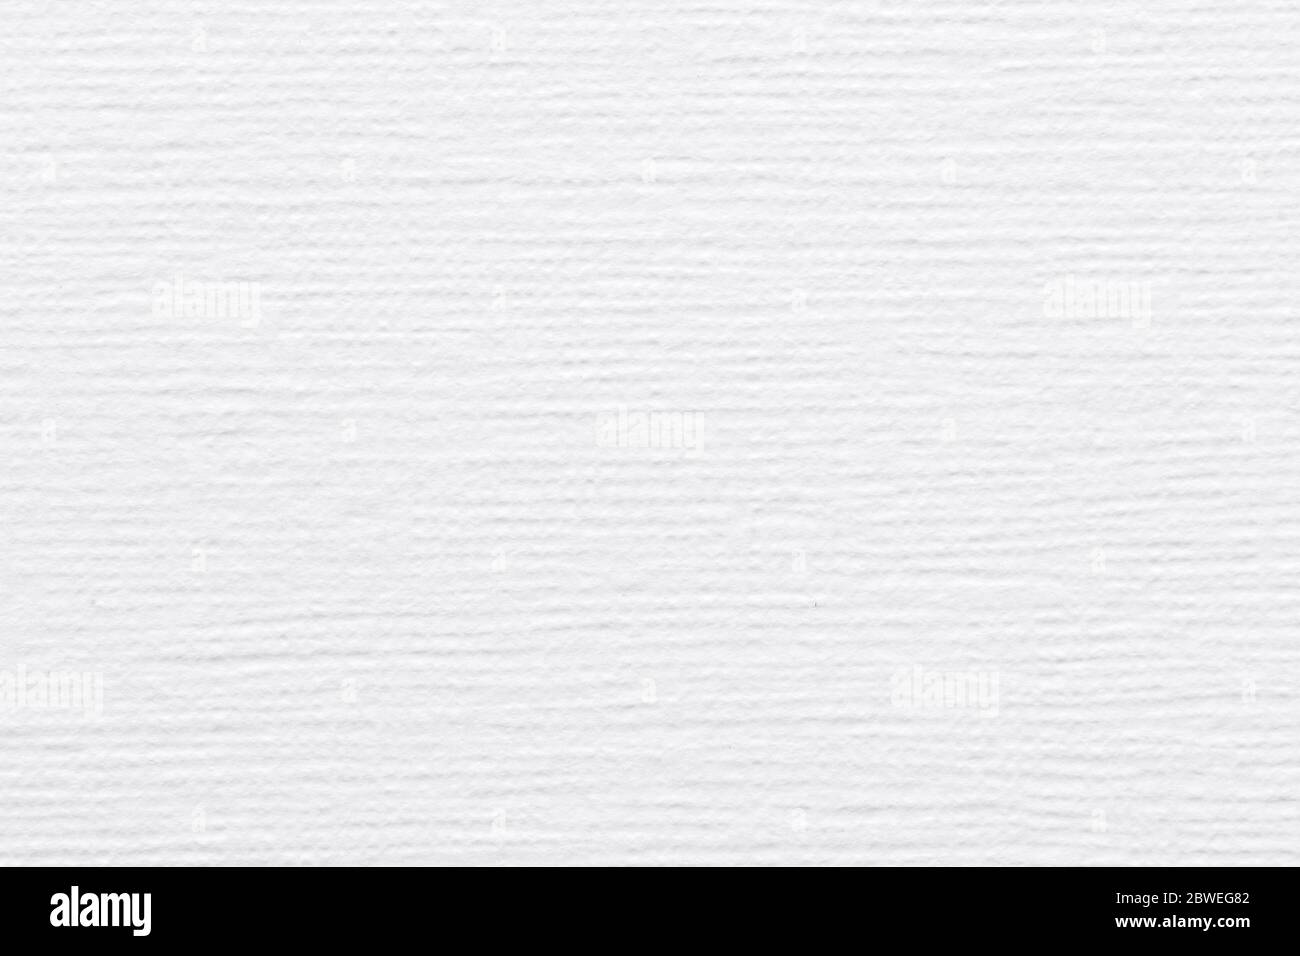 Weiße Papierstruktur für Ihren liebenswerten persönlichen Design-Look. Stockfoto